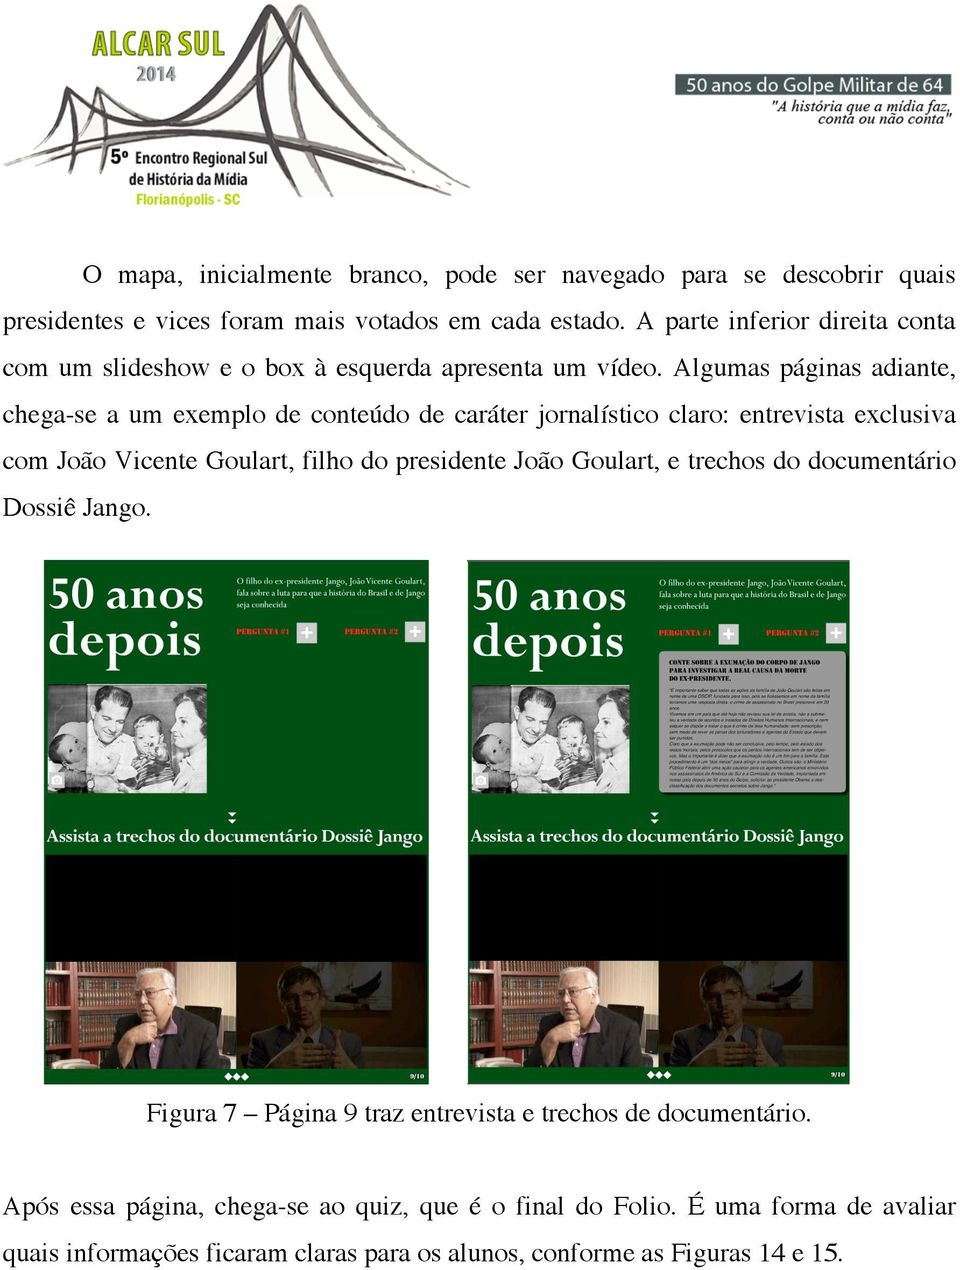 Algumas páginas adiante, chega-se a um exemplo de conteúdo de caráter jornalístico claro: entrevista exclusiva com João Vicente Goulart, filho do presidente João